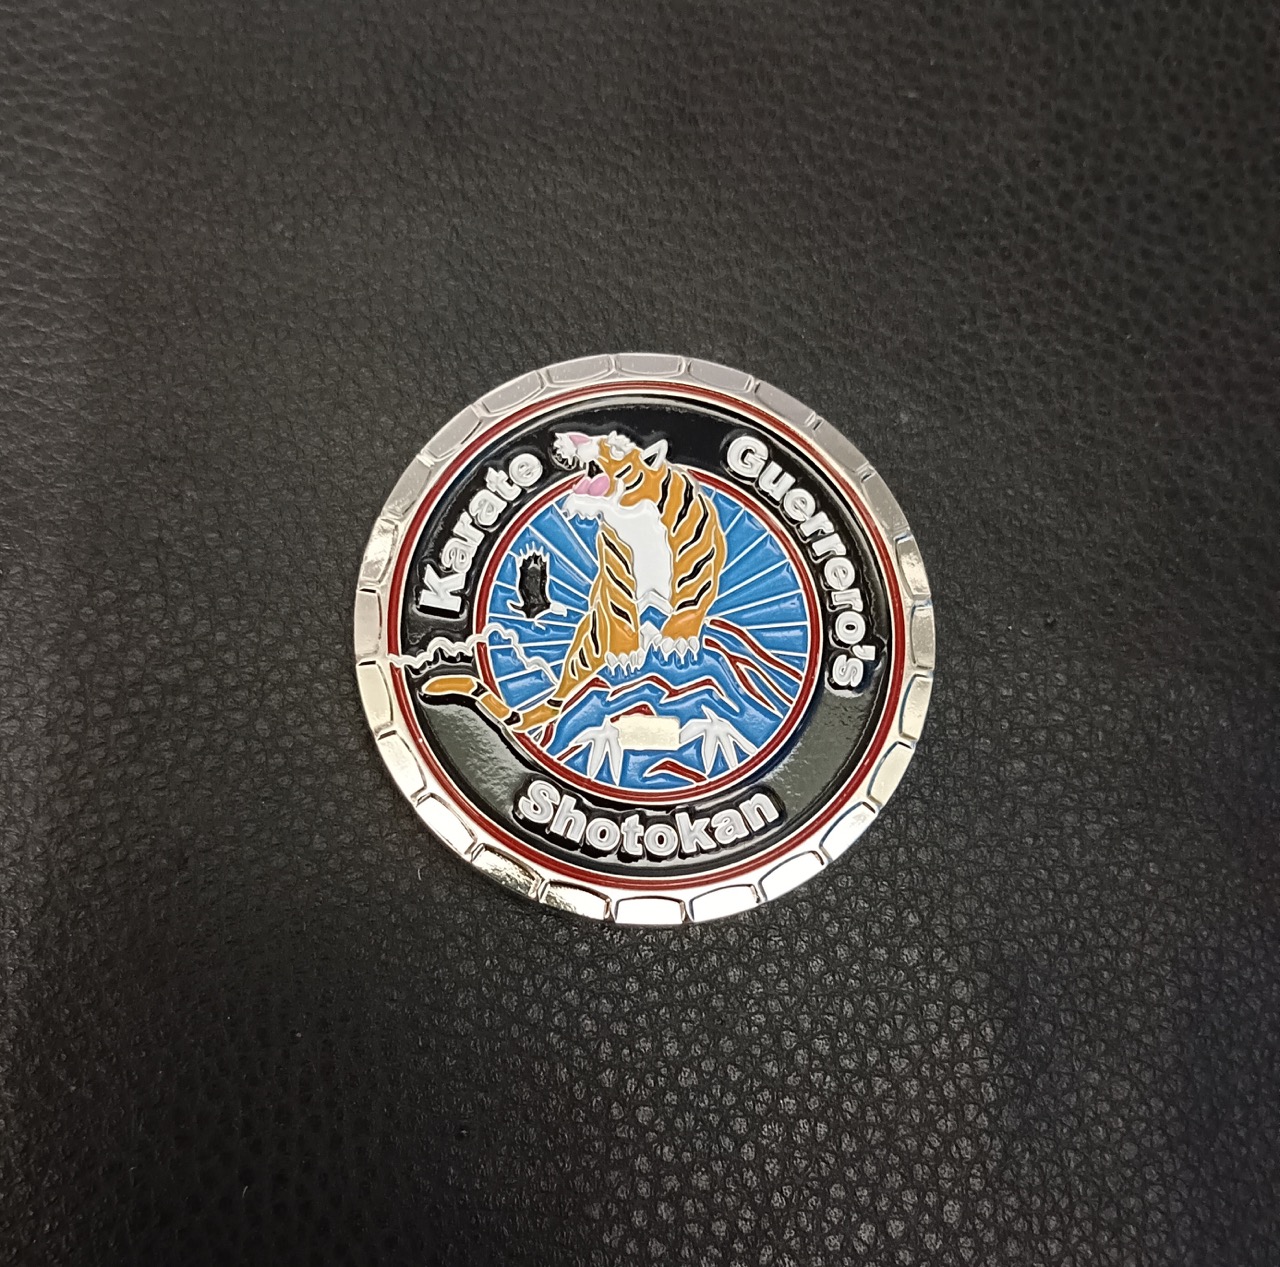 Karate Club Challenge Coin 